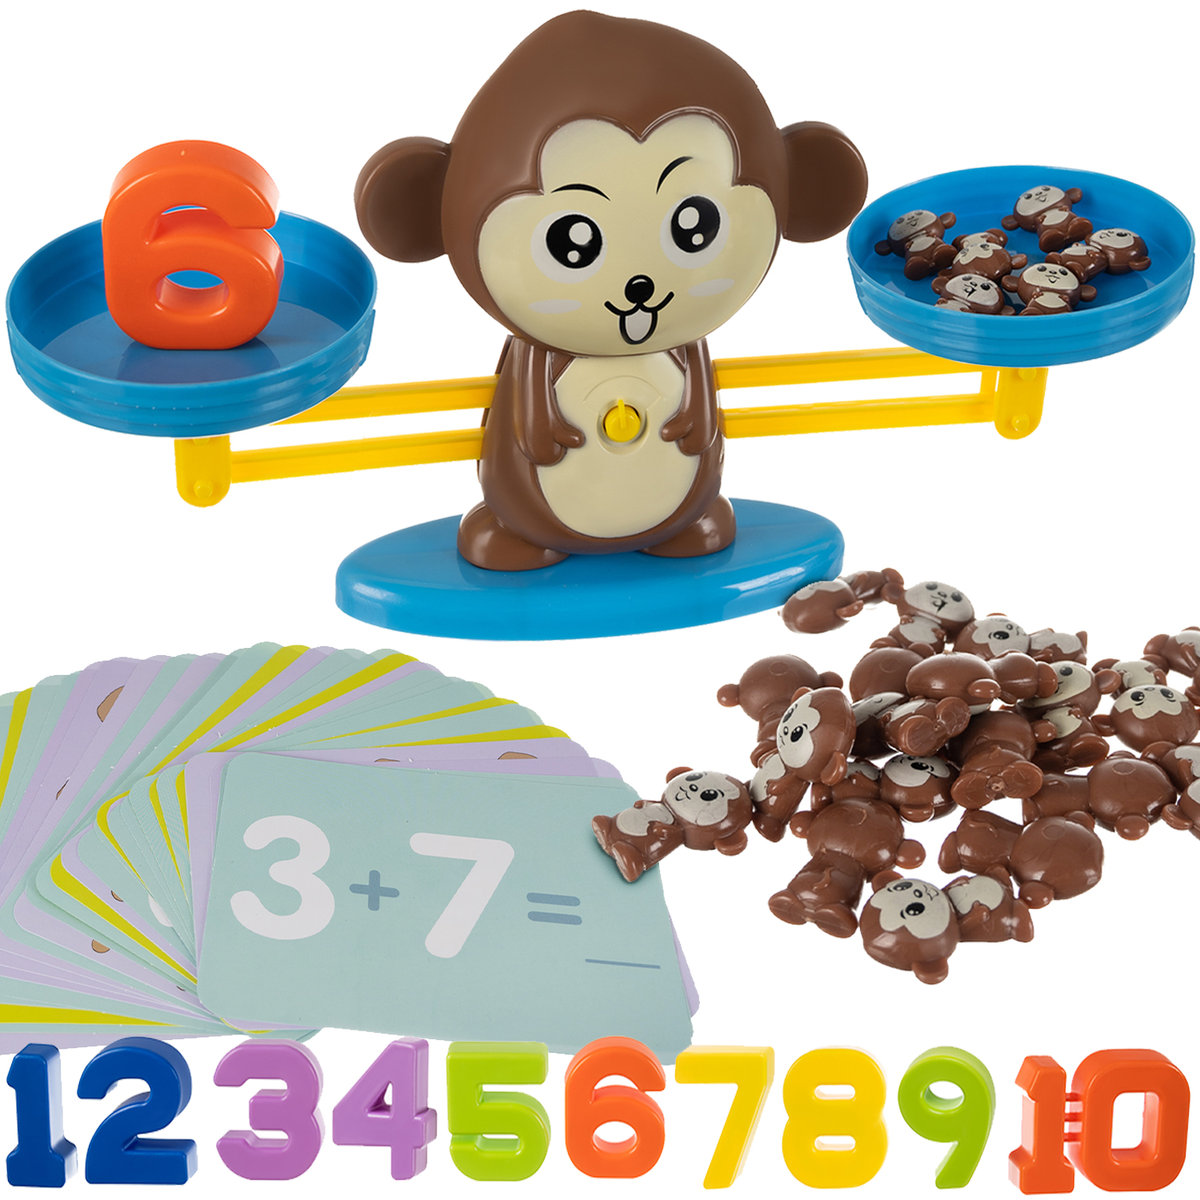 Gra edukacyjna małpka waga 939523